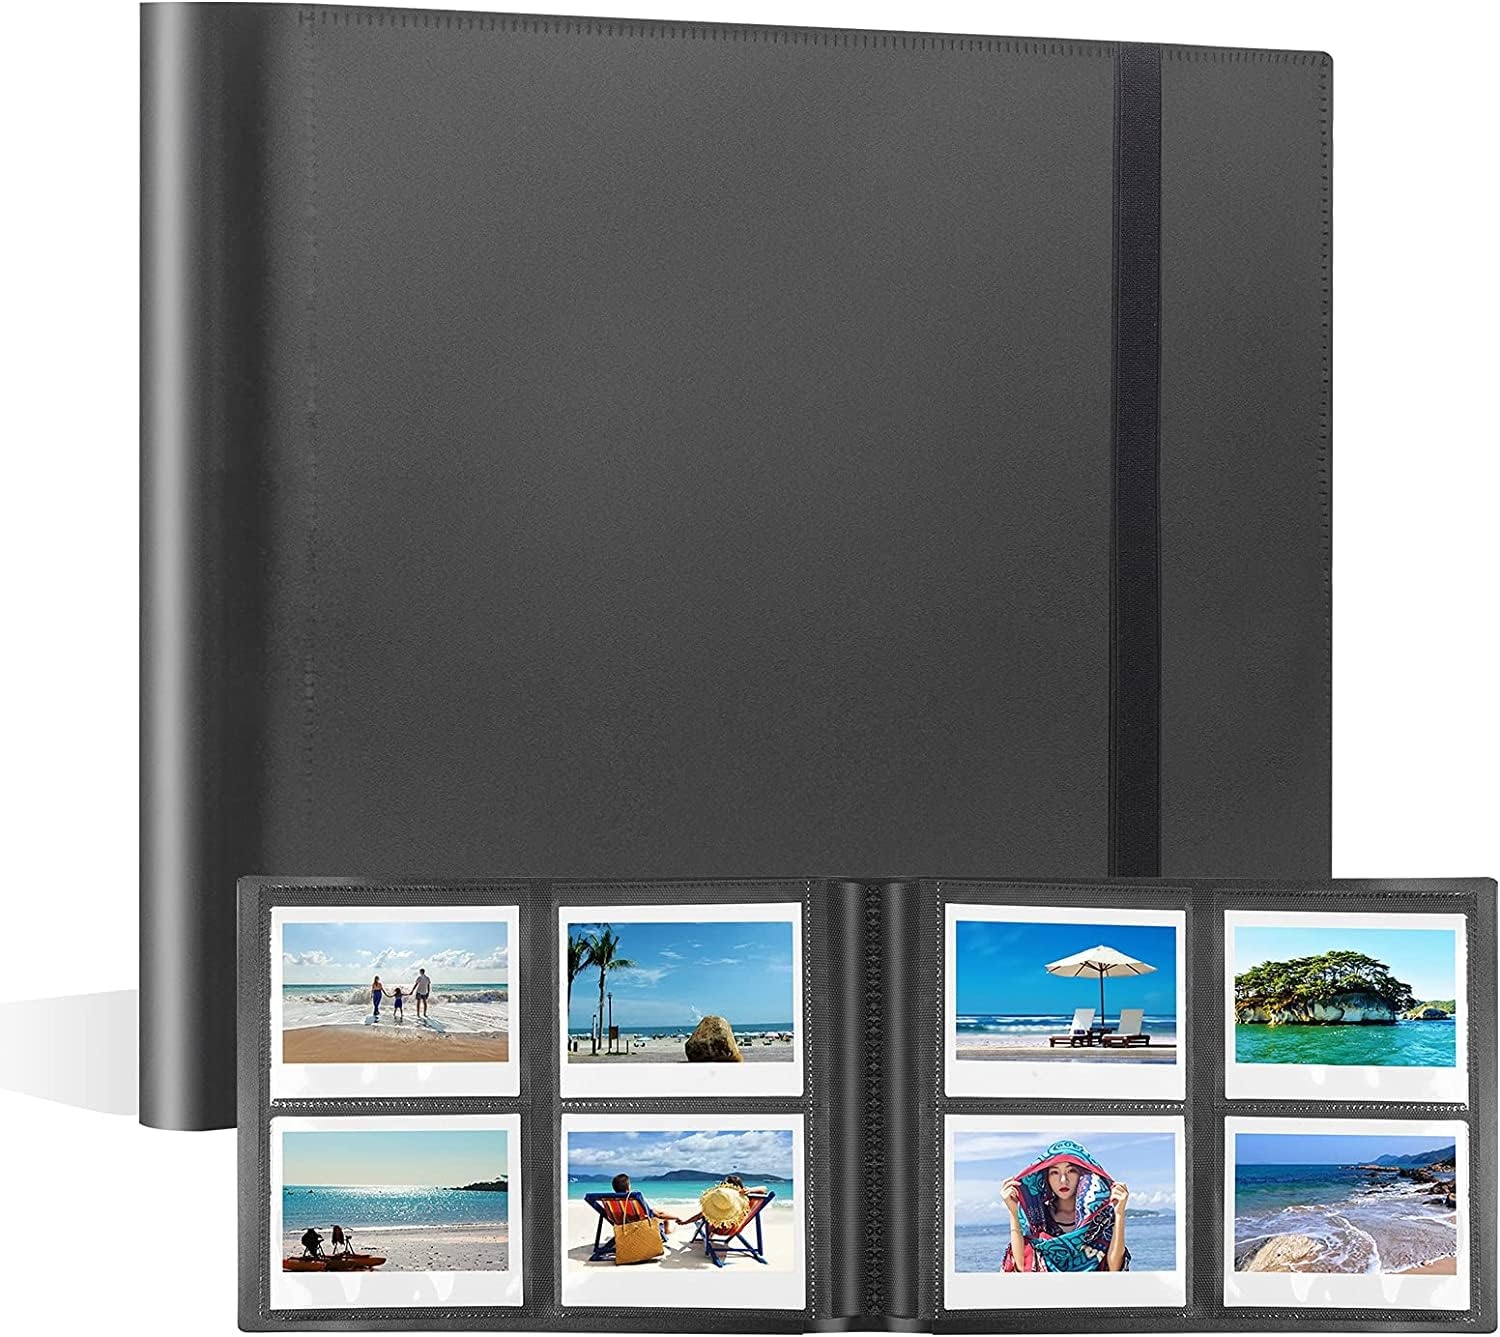 160 Taschen Fotoalbum für Fujifilm Instax Wide 300, für Polaroid OneStep/Polaroid POP/Polaroid Originals 600/Polaroid SX70 Kamera 3.5x4.5 Zoll Foto, i-Type Film Album(Schwarz)